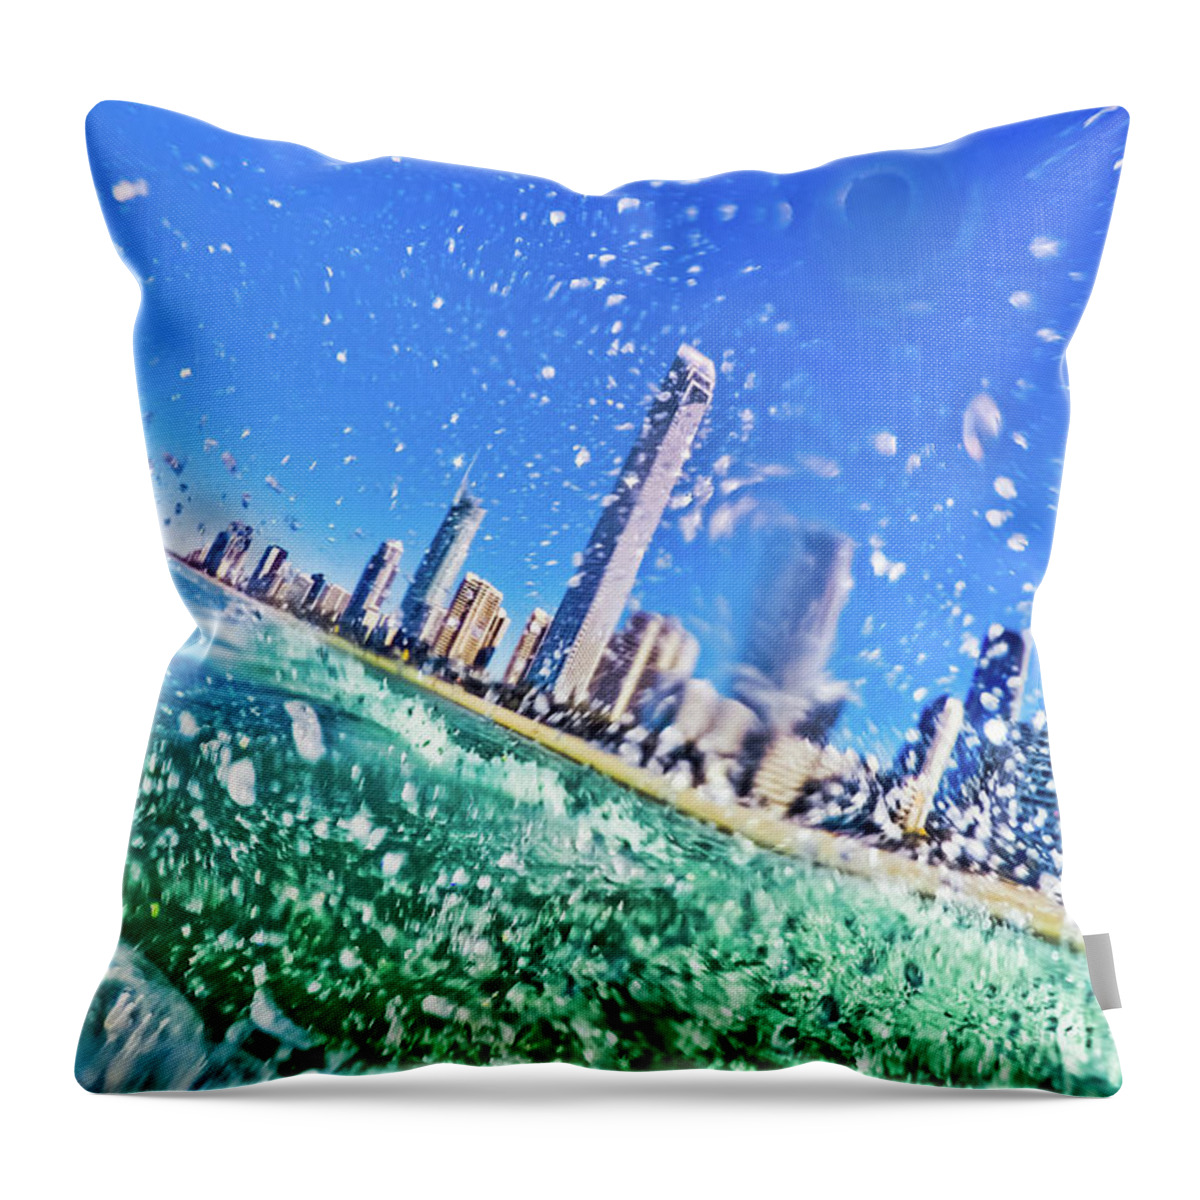 Australia Lifestyle Throw Pillow featuring the photograph Splash by Az Jackson